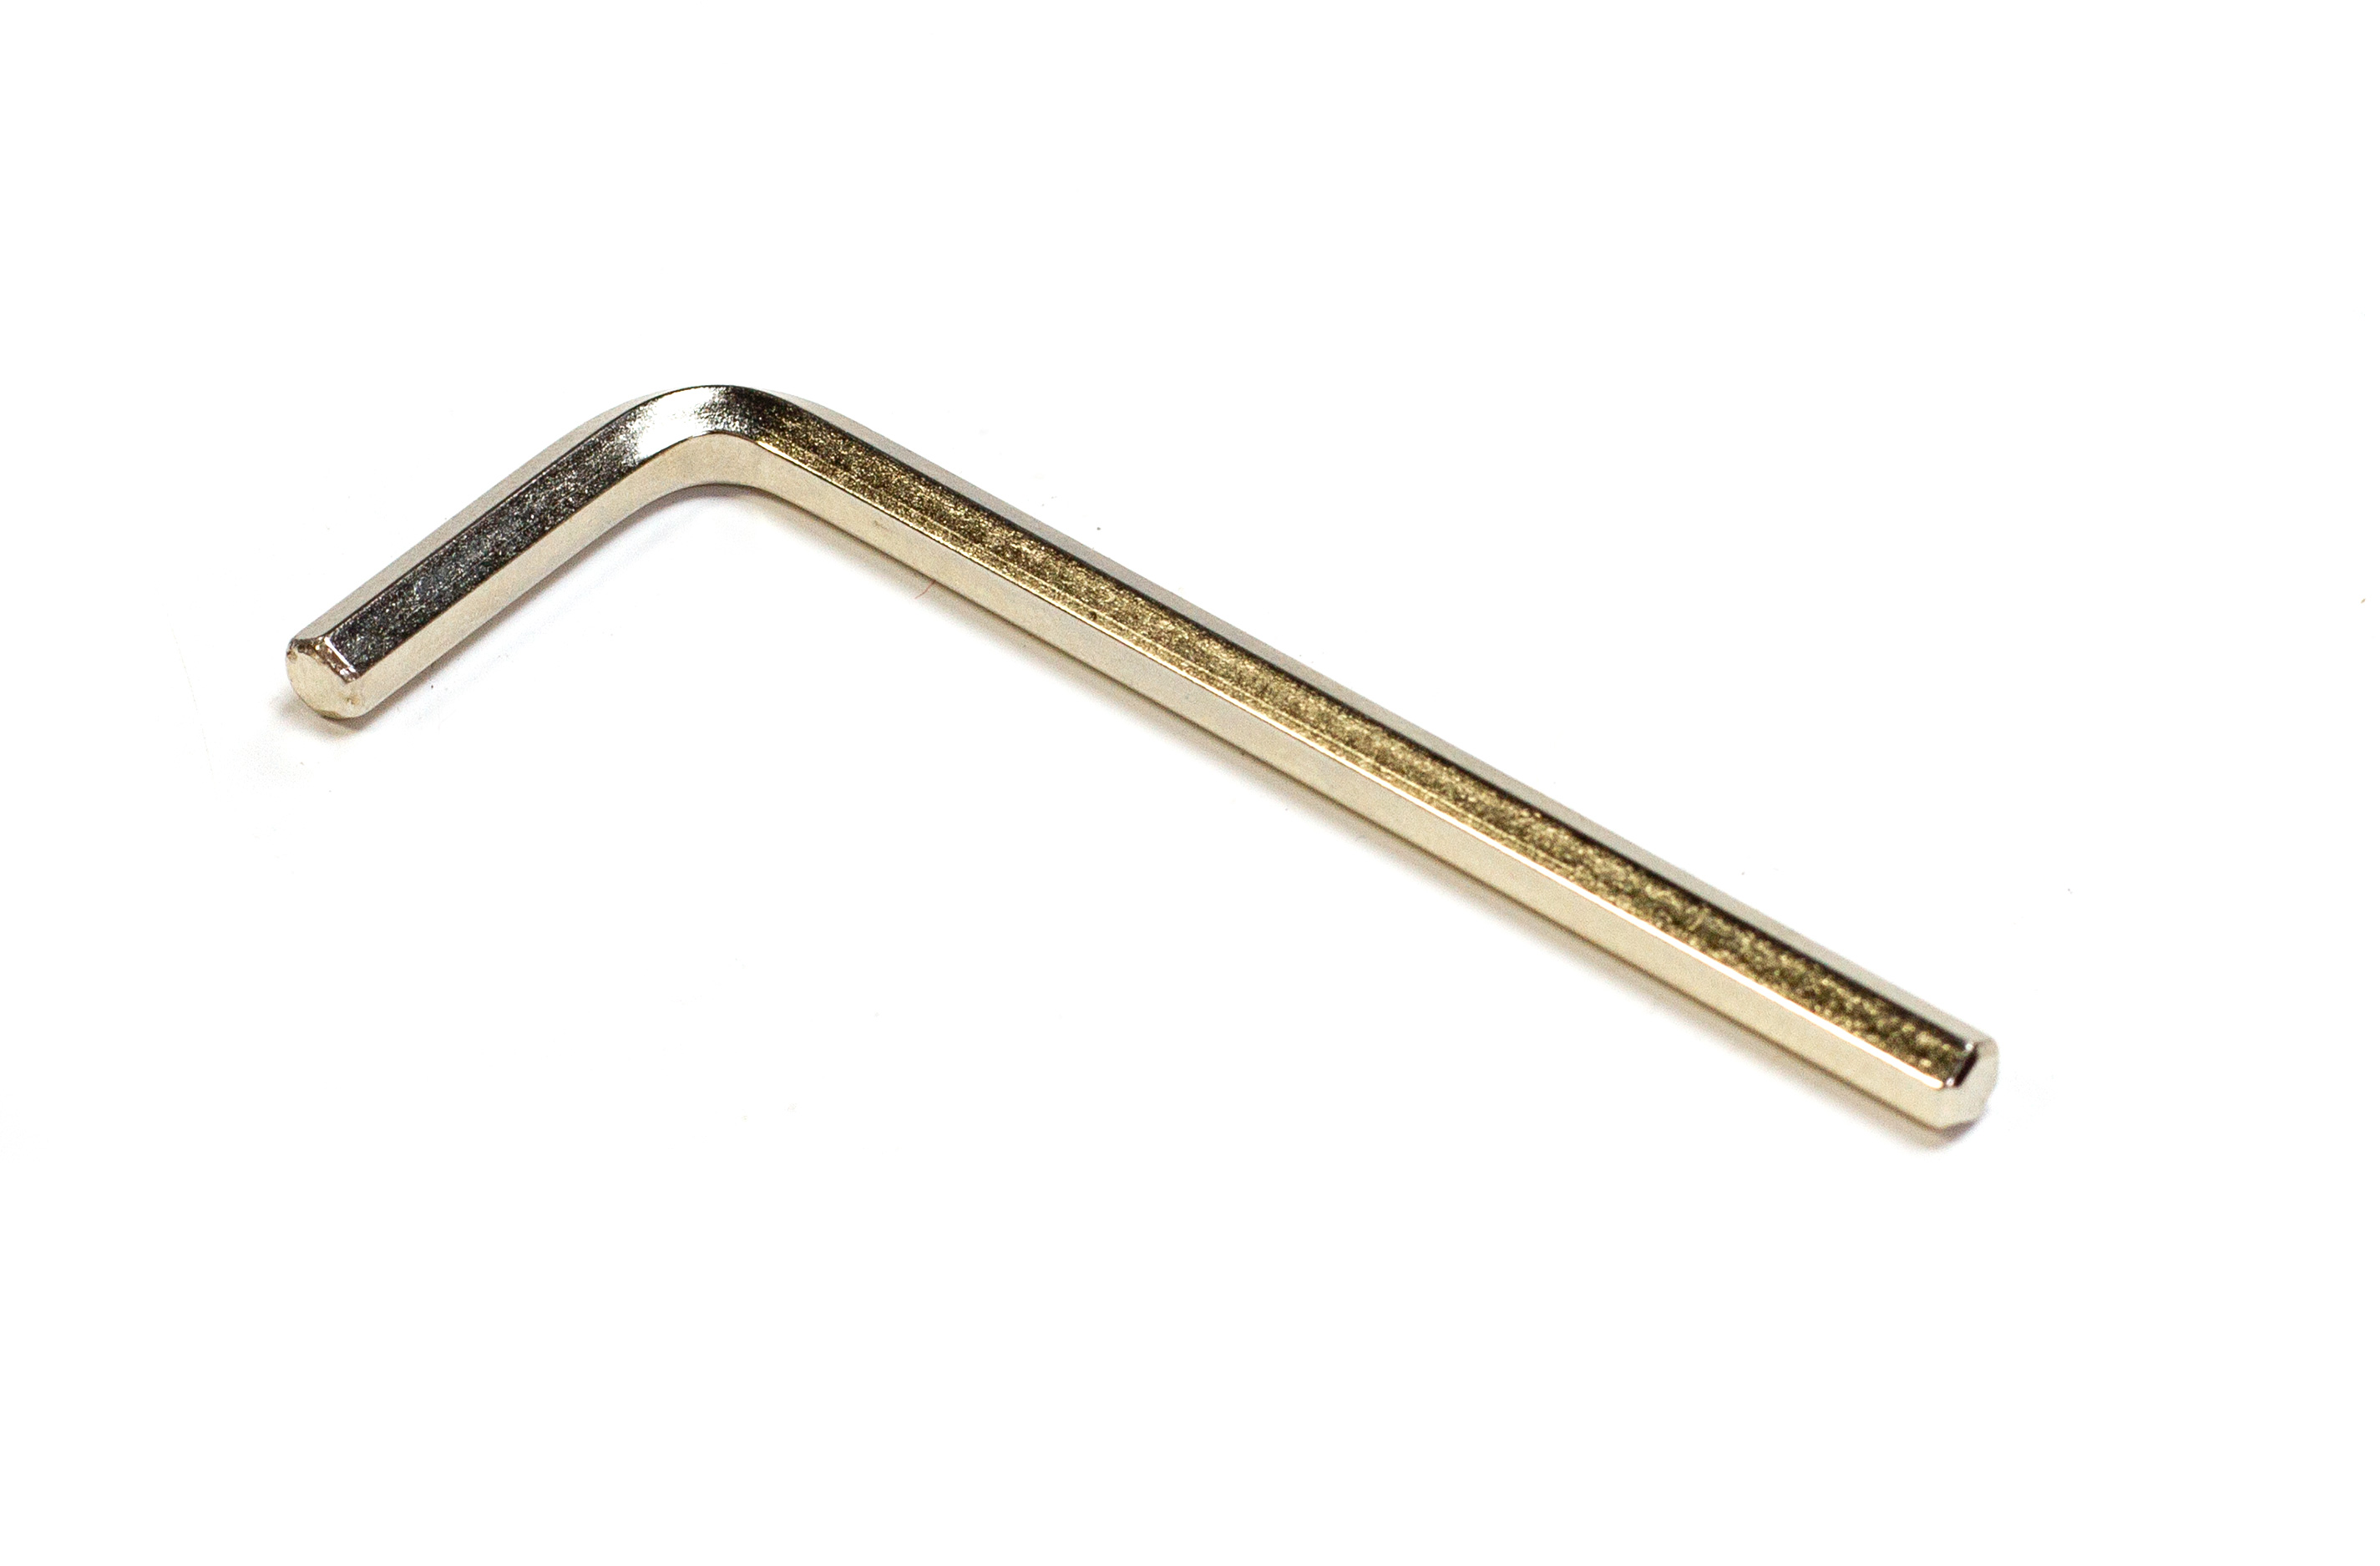 y0037/06 9/64 Allen key wrench